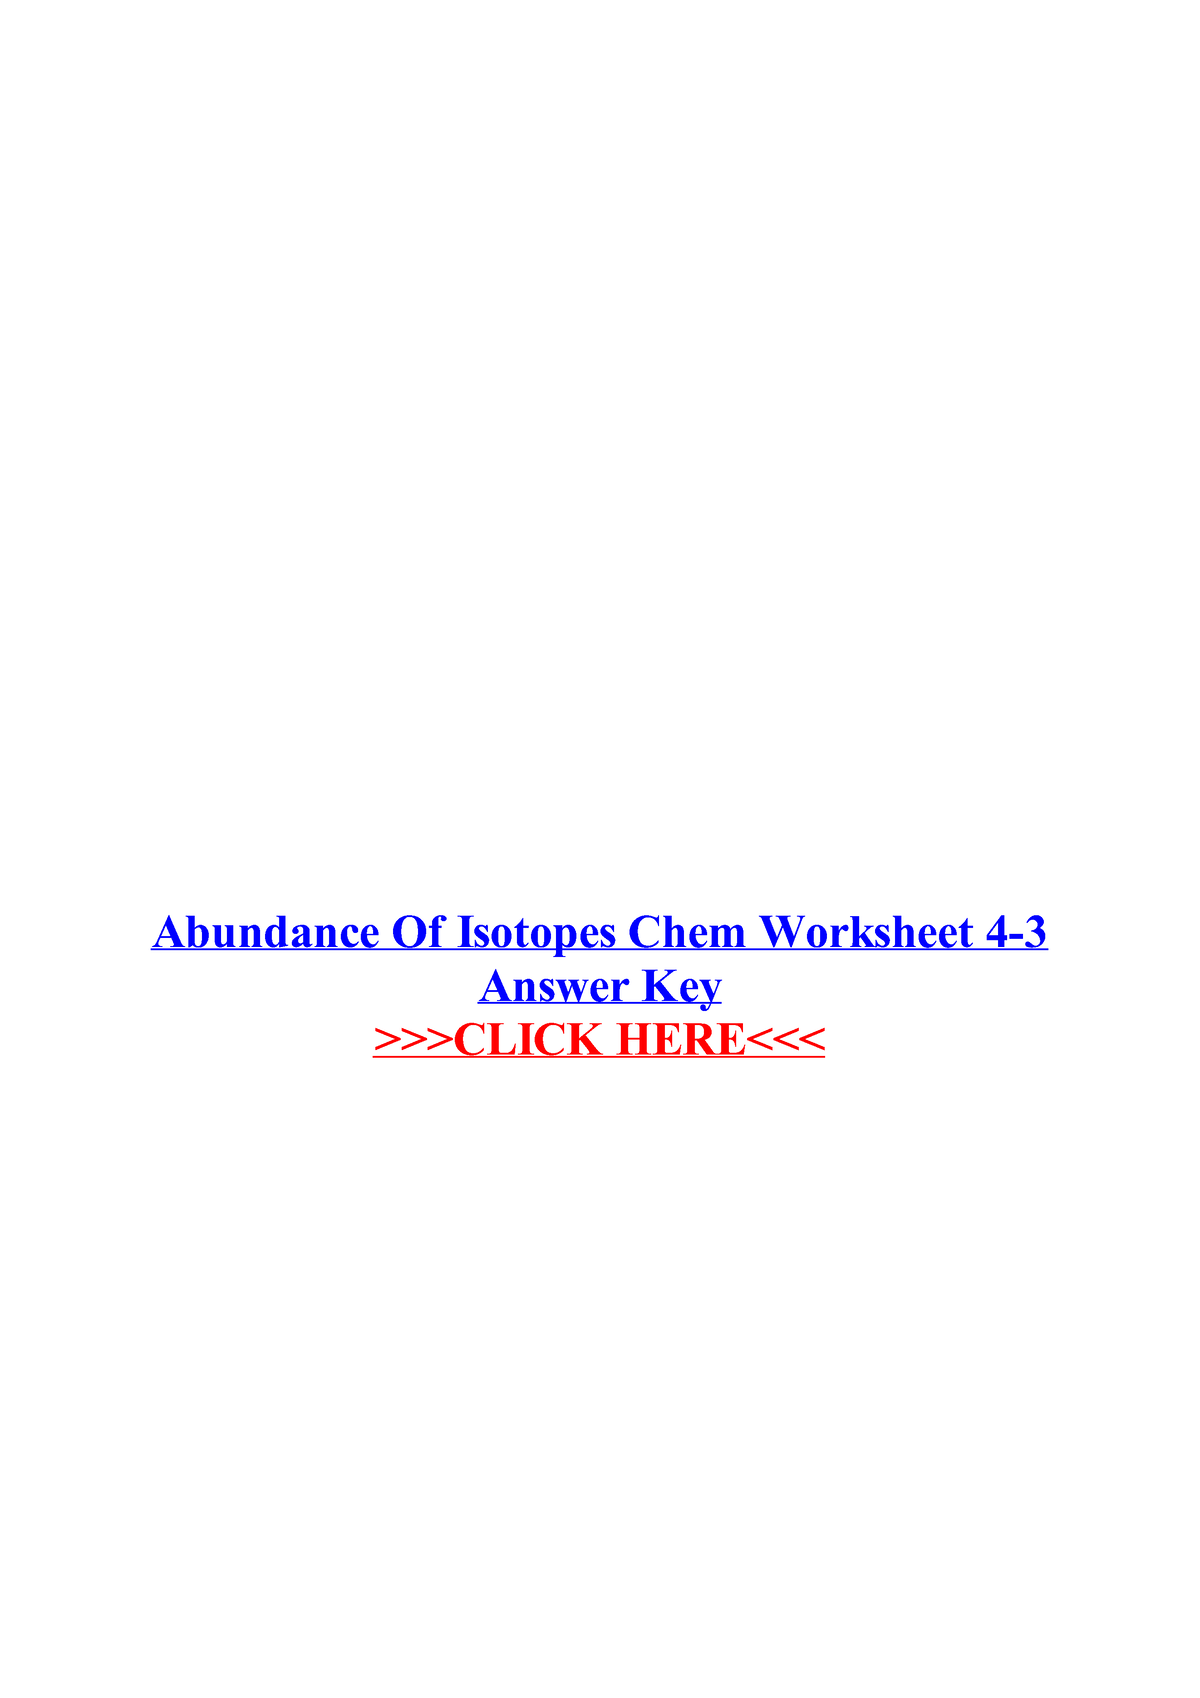 Abundance of isotopes chem worksheet 4 3 answer key Abundance Of